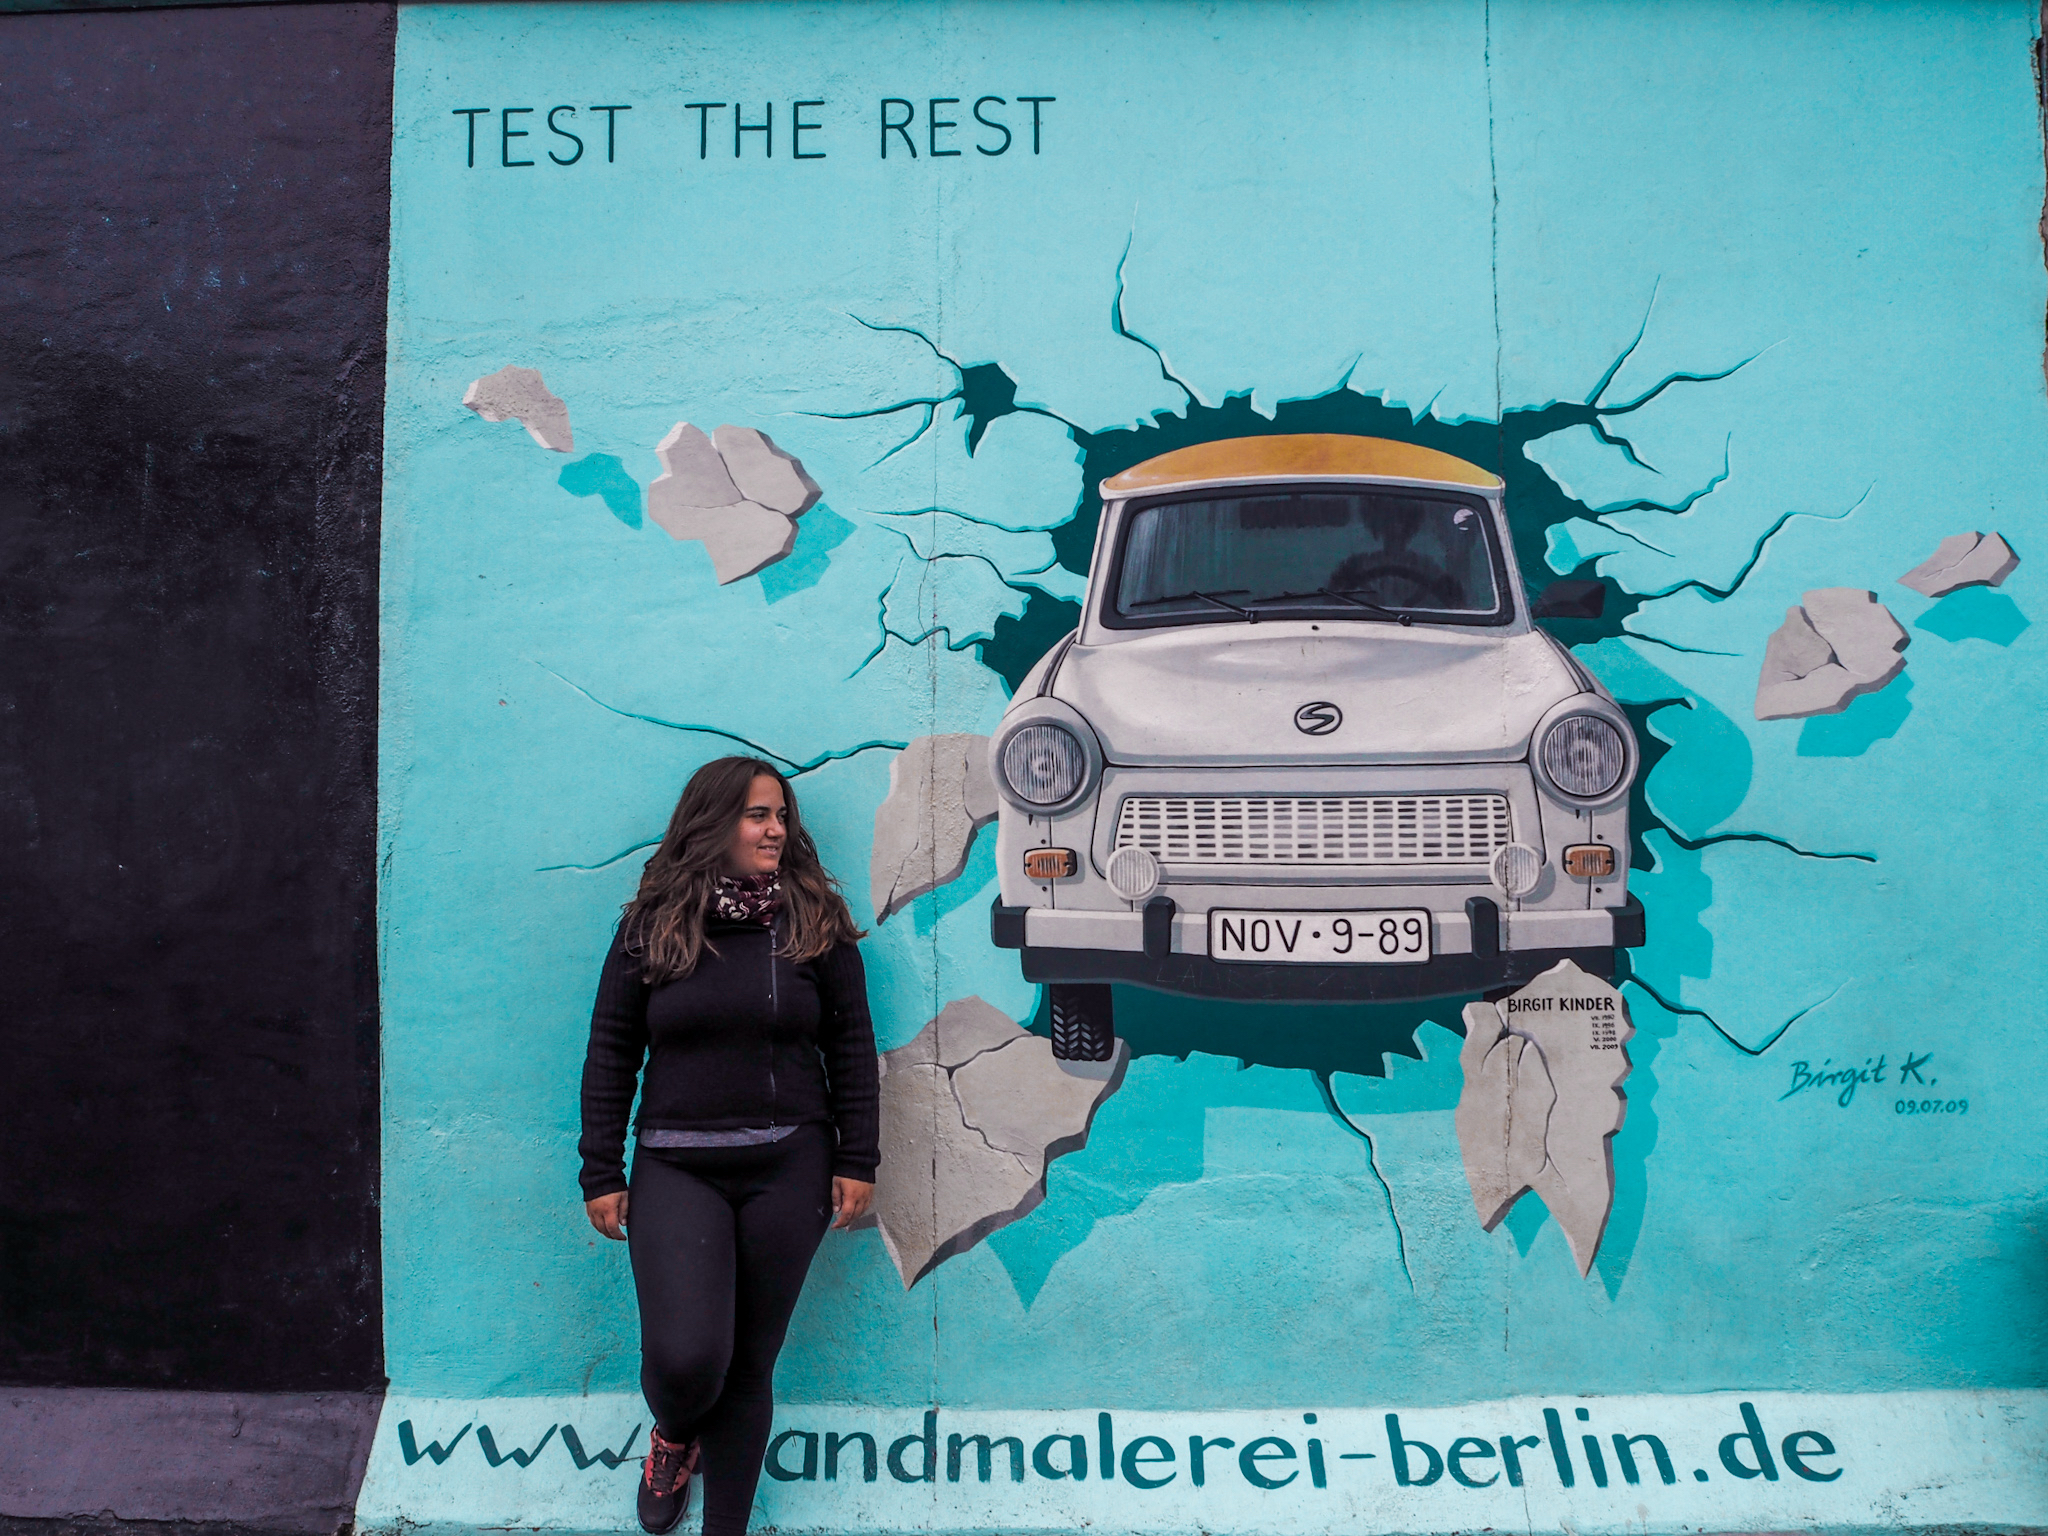 East Side Gallery, mayor tramo del Muro de Berlín que se conserva convertido en una galería de arte